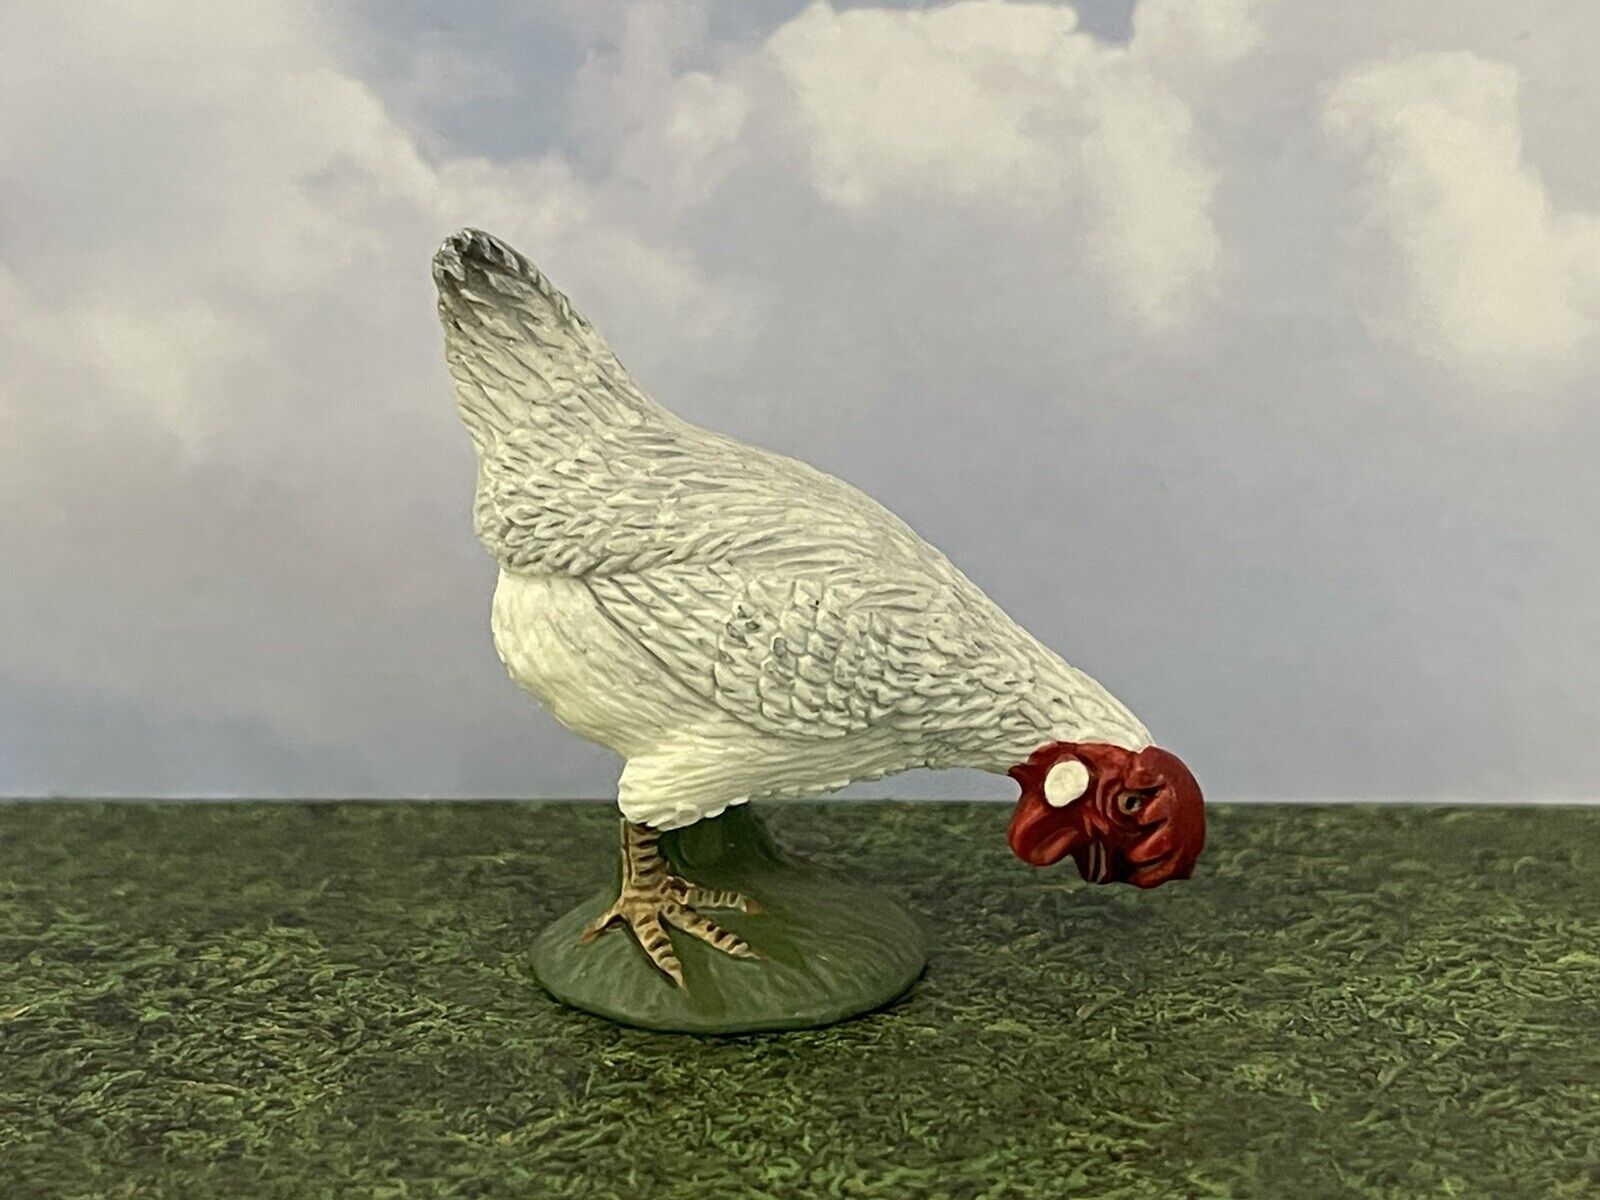 Schleich Pecking Chicken 13647 ‘08